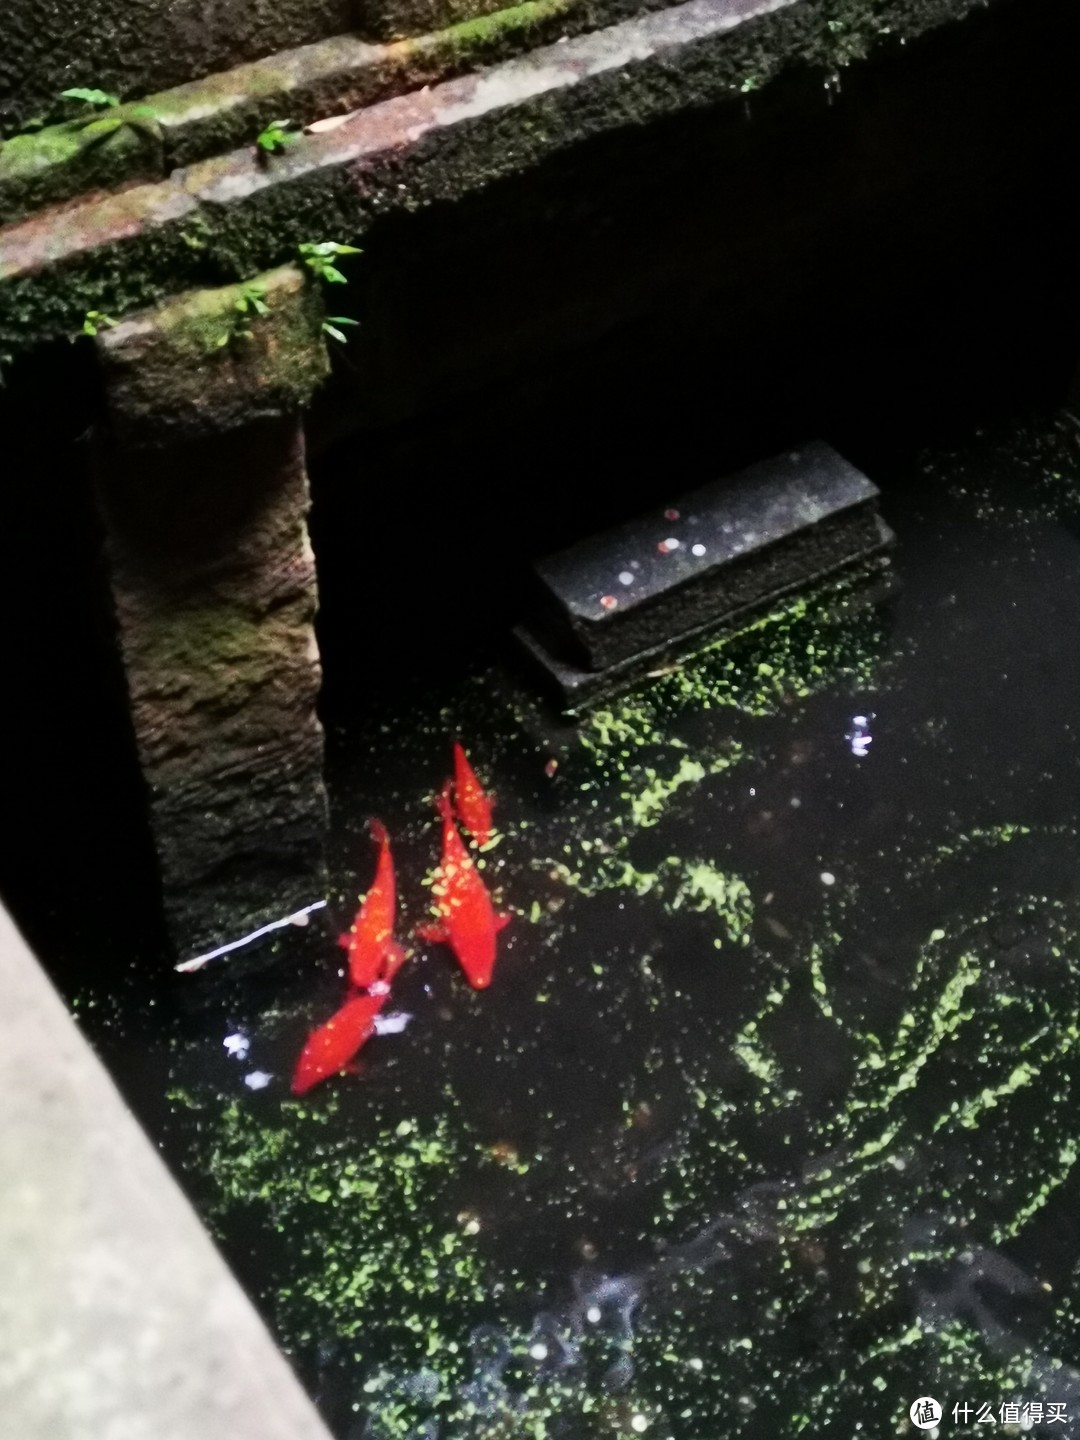 民宿天井下面是个池子，里面还养了几条鱼，自由自在，想起了王牌对王牌中的红鲤鱼与绿鲤鱼与驴那段